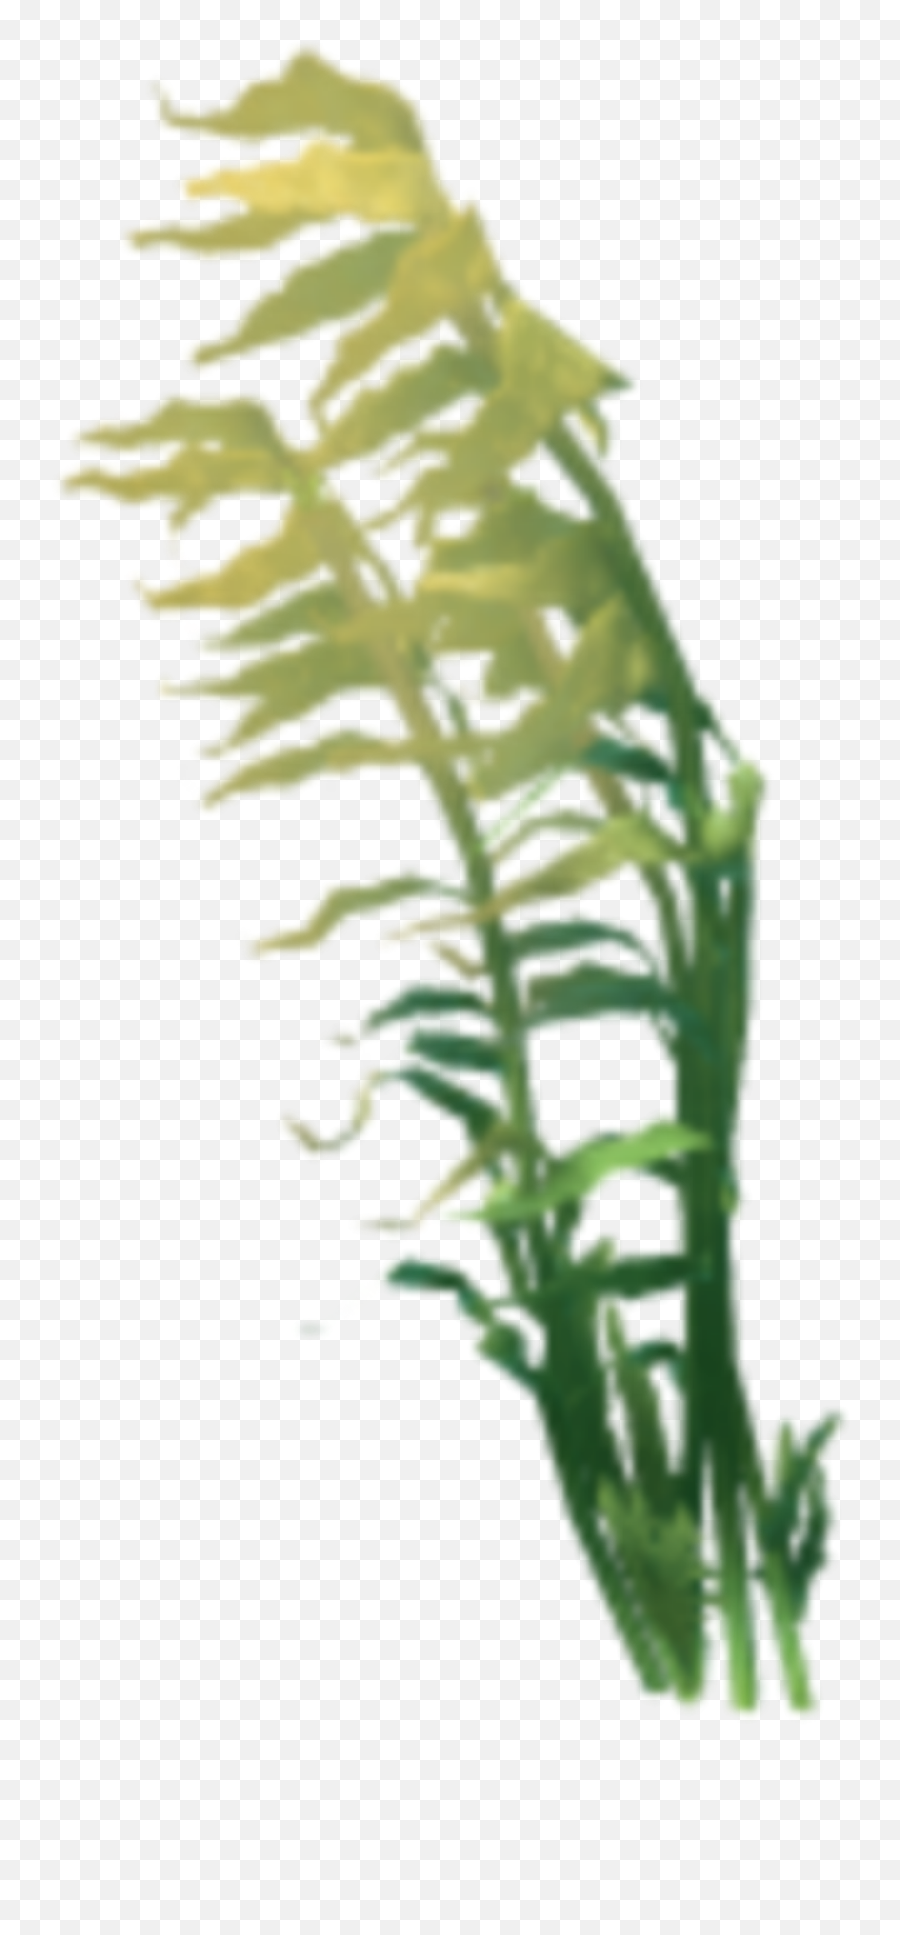 Coral Anemone Kelp Seaweed Sticker By Territales Emoji,Seaweed Transparent Background